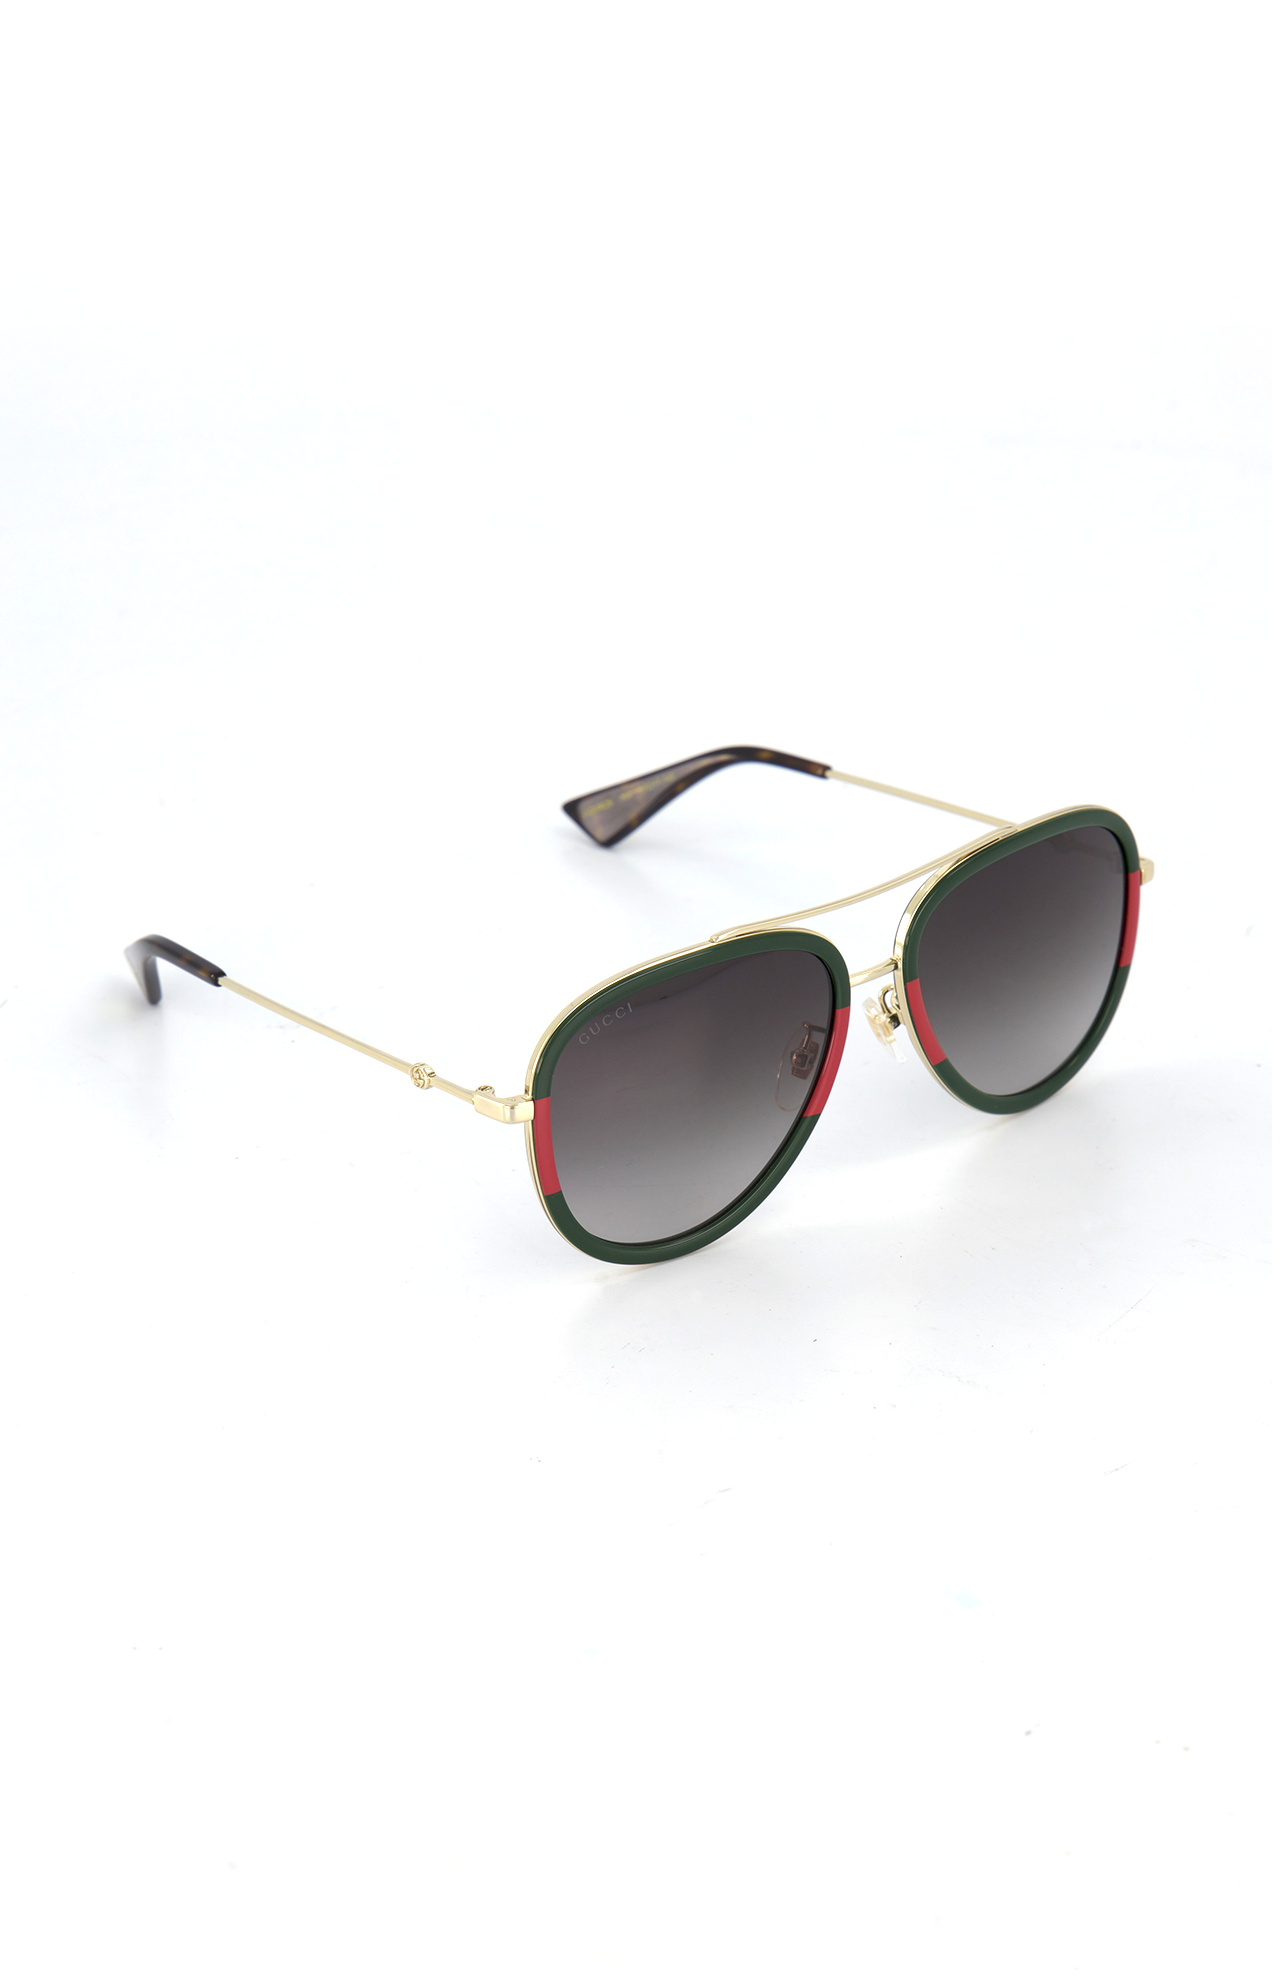 Gucci Women's Sunglasses | A.K. Rikk's